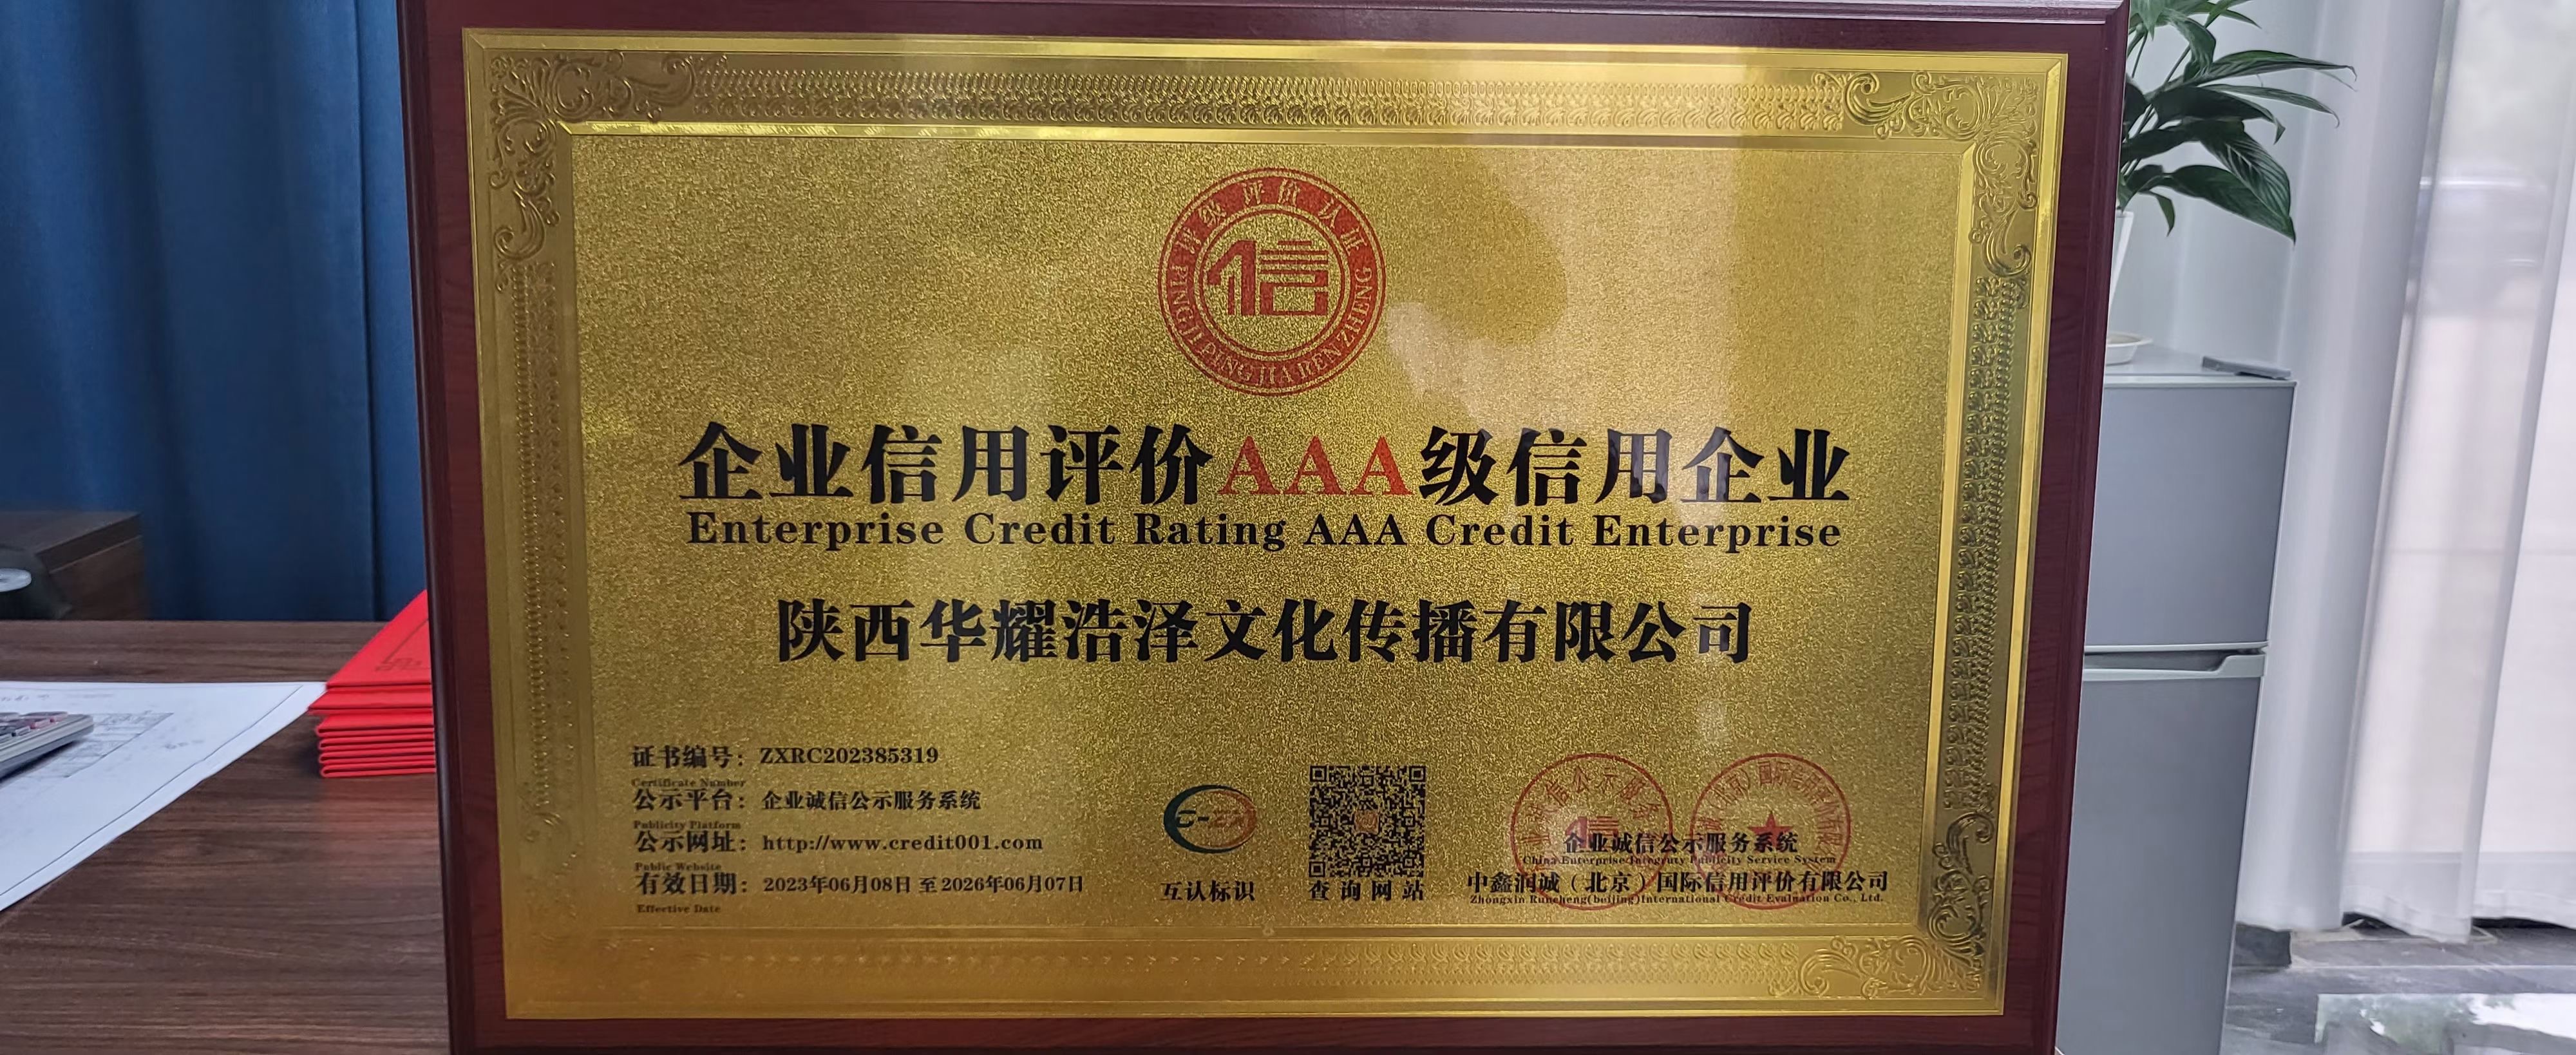 热烈祝贺陕西华耀浩泽文化传播有限公司获得：企业信用评价AAA级信用企业